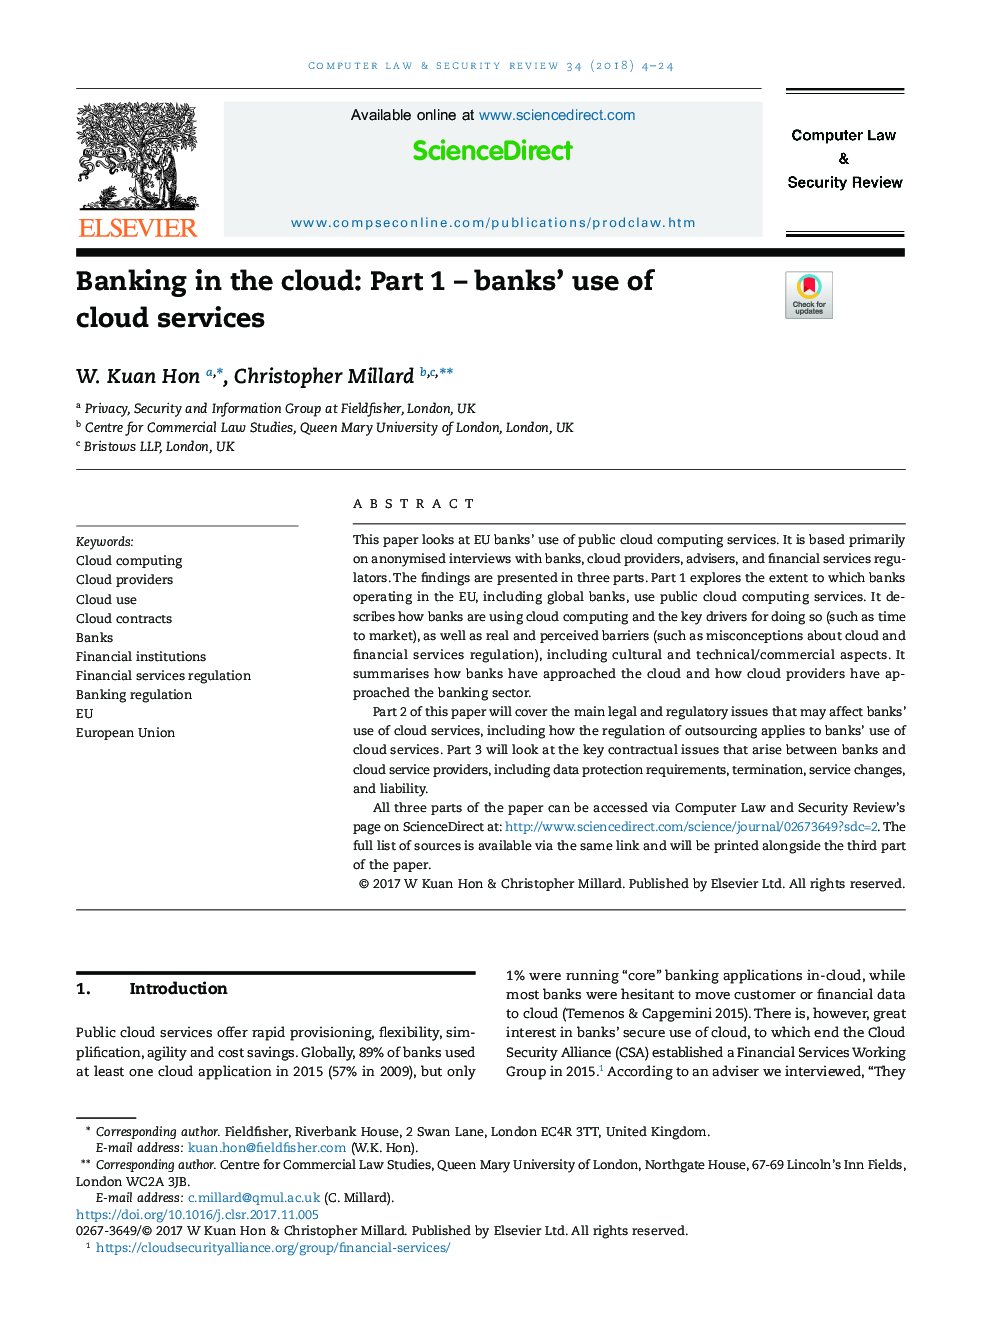 بانکداری در ابر: بخش اول - استفاده از بانک های خدمات ابری 